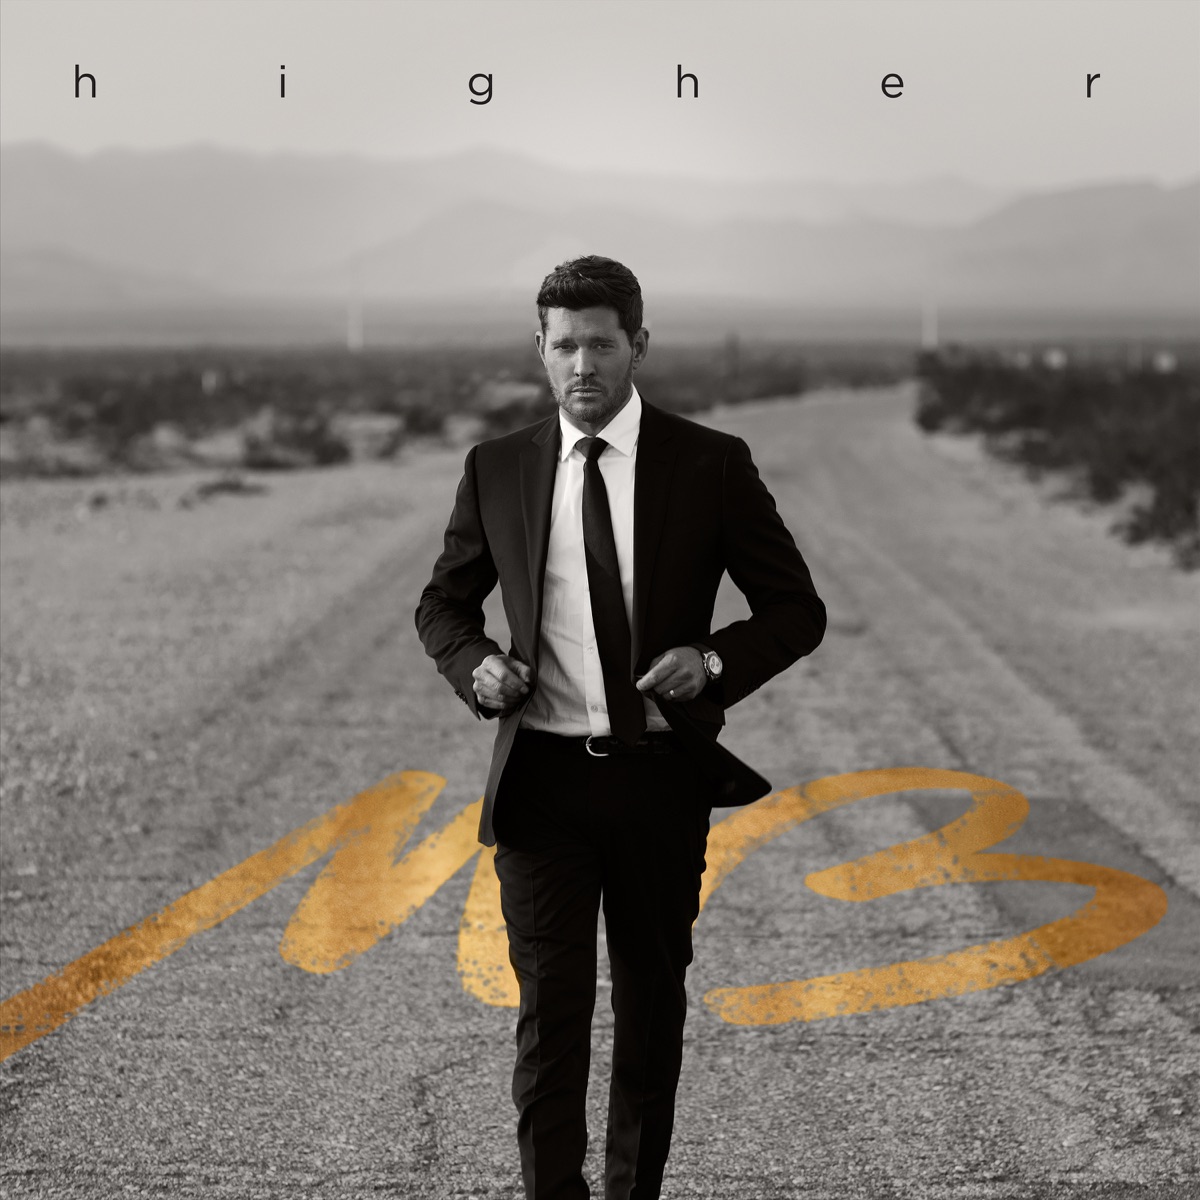 Michael Bublé &Quot;Higher&Quot; Album Review 2